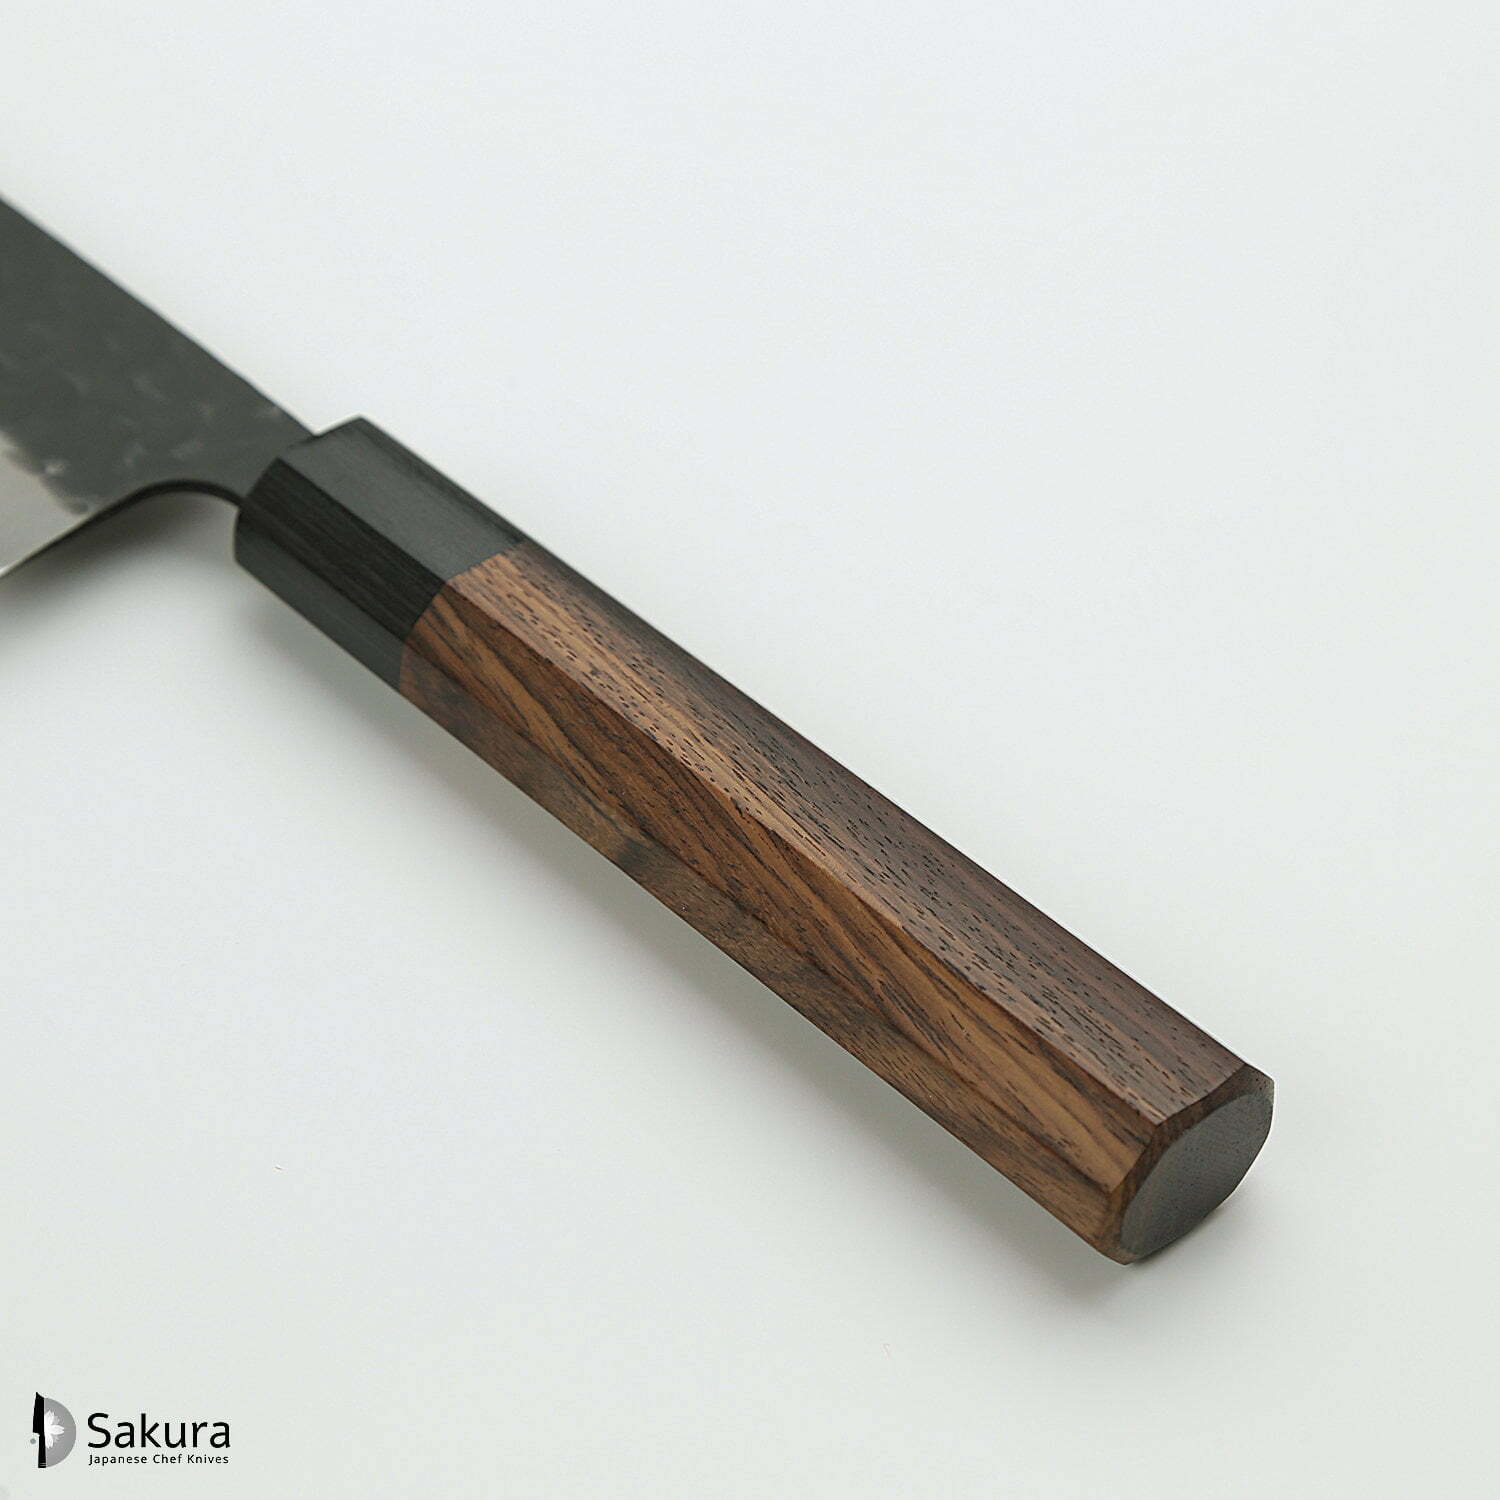 סכין רב-תכליתית סָנטוֹקוּ 165מ״מ מחוזקת 3 שכבות: פלדת פחמן יפנית מתקדמת מסוג Aogami Super עטופה פלדת אל-חלד גימור קורואיצ׳י שחור עם ריקוע פטיש ג׳יקו סאקאיי יפן